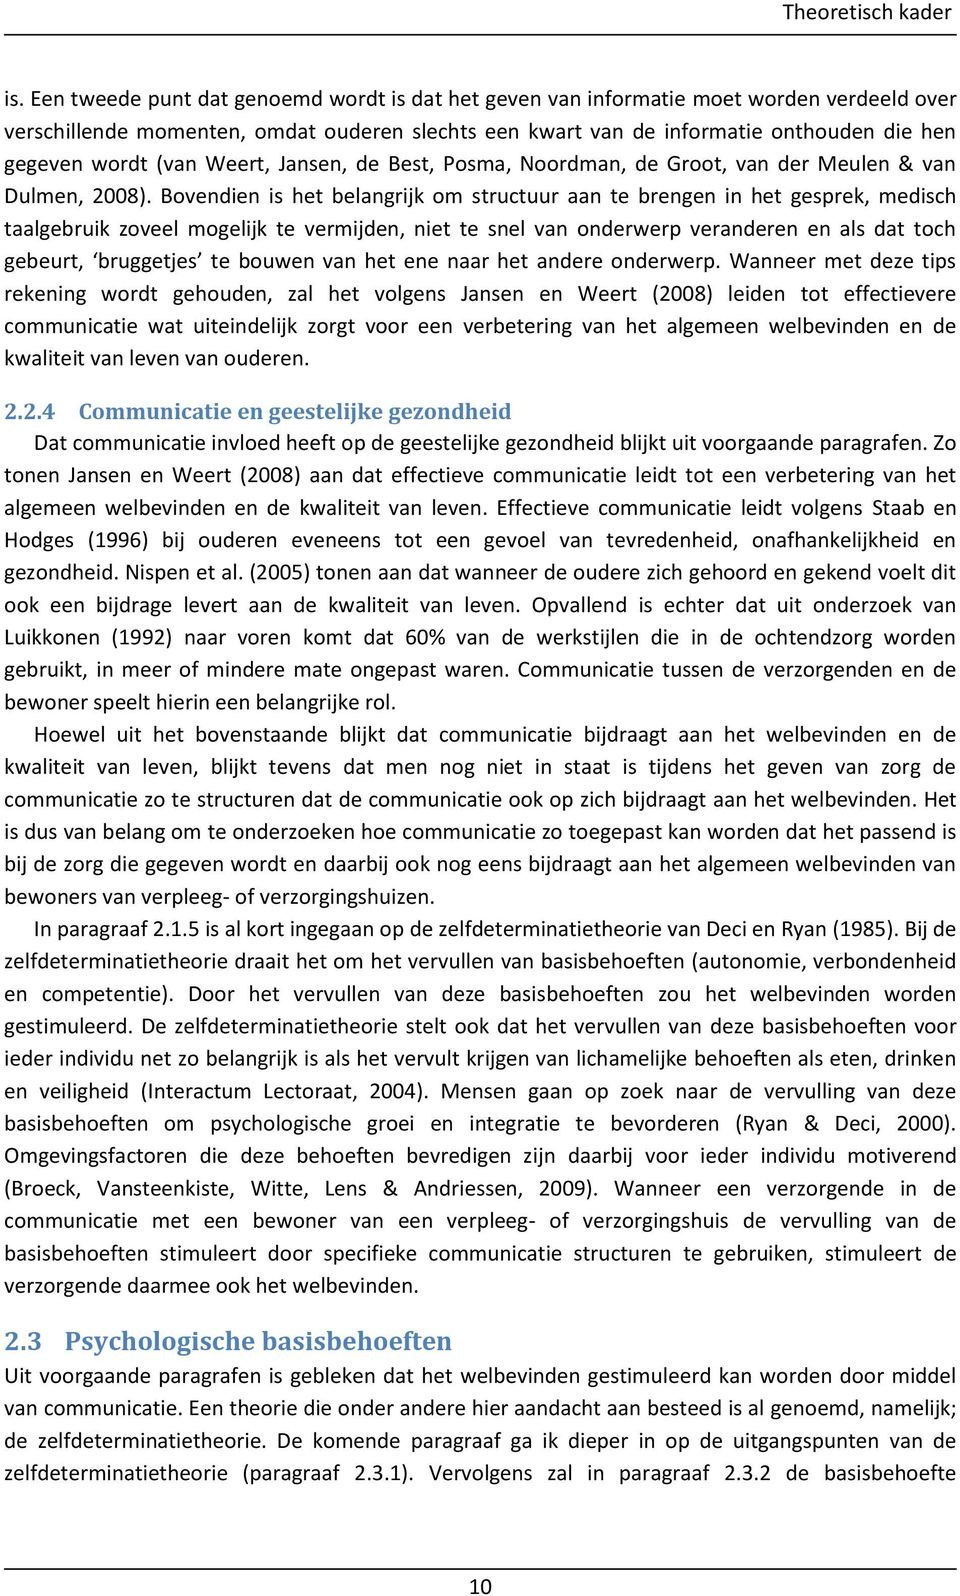 (van Weert, Jansen, de Best, Posma, Noordman, de Groot, van der Meulen & van Dulmen, 2008).